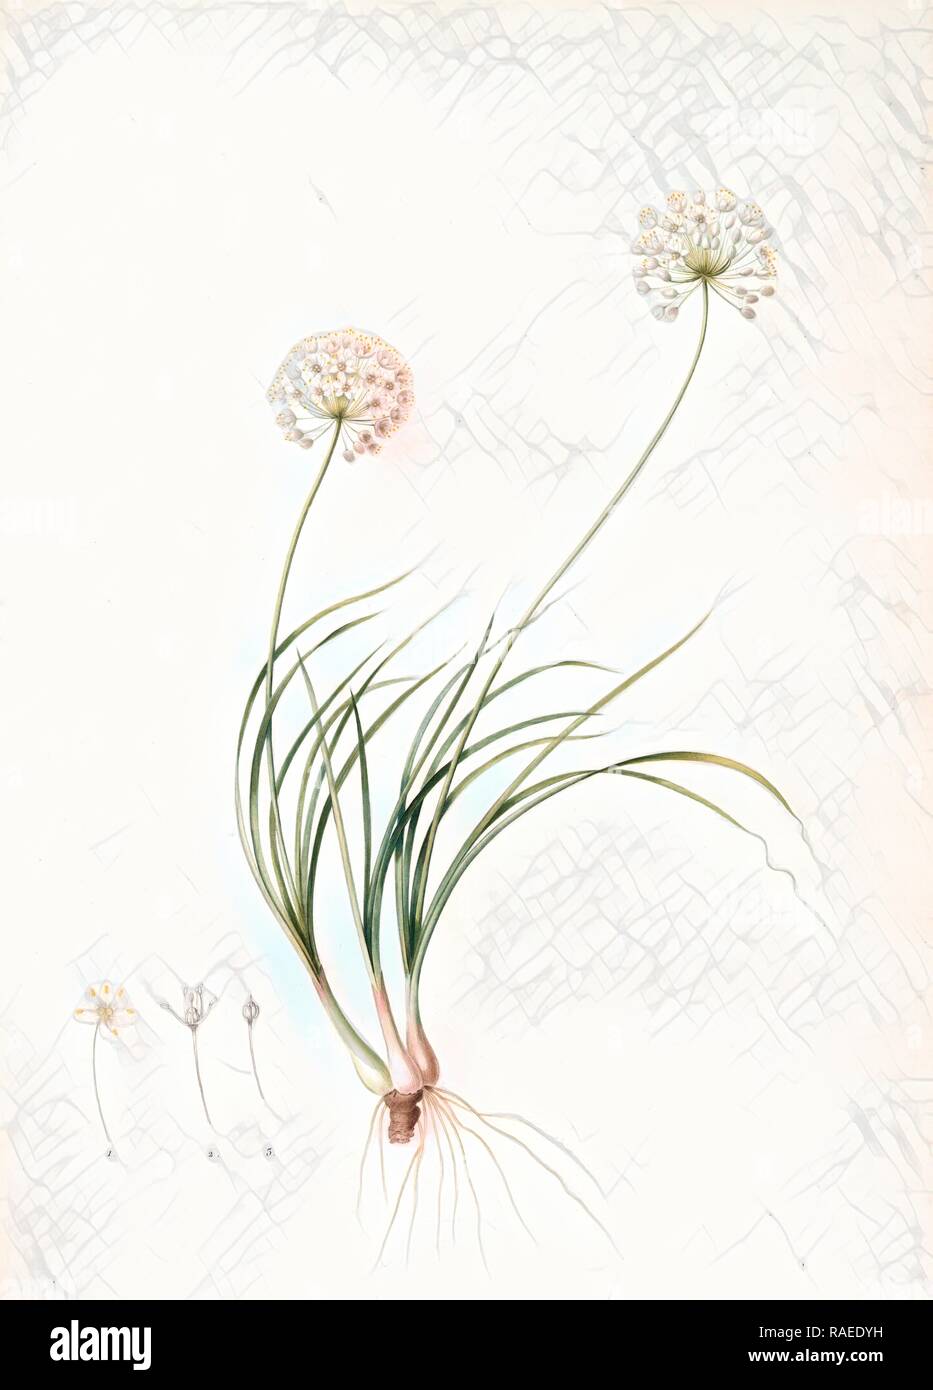 Allium denudatum, Ail dénudé, Redouté, Pierre Joseph, 1759-1840, les liliacees, 1802 - 181. Reimagined Stock Photo